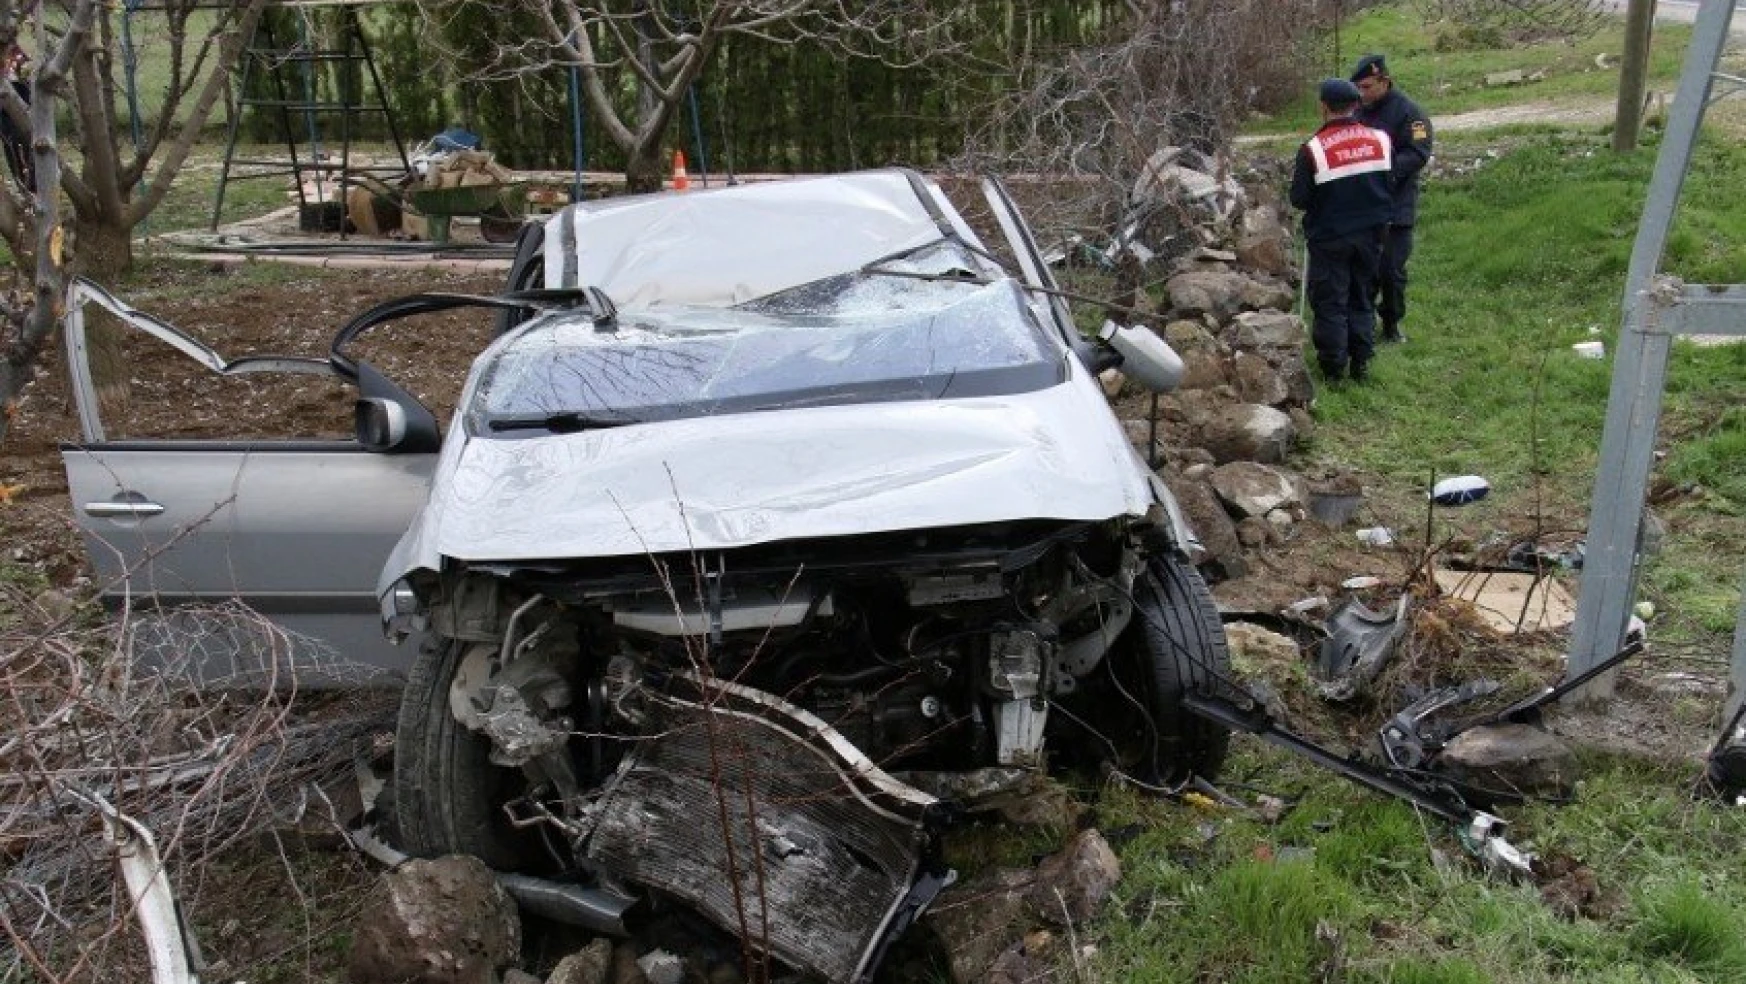 Keban Yolunda Trafik Kazası, Otomobil Bahçeye Uçtu, 3 Kişi Yaralandı